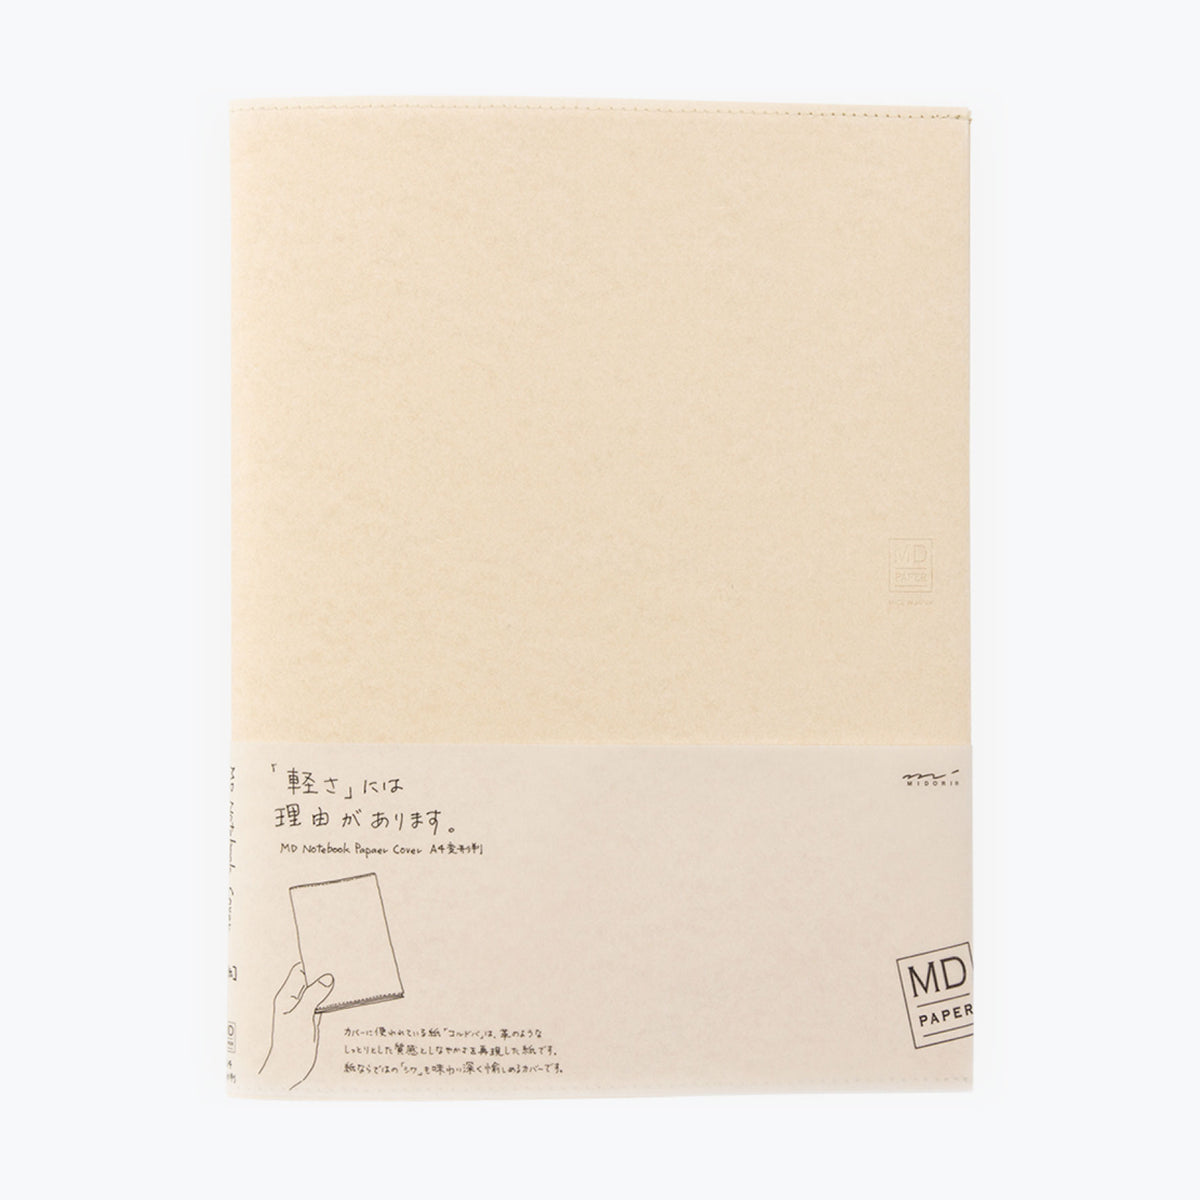 Midori - Notebook Cover - Paper - A4